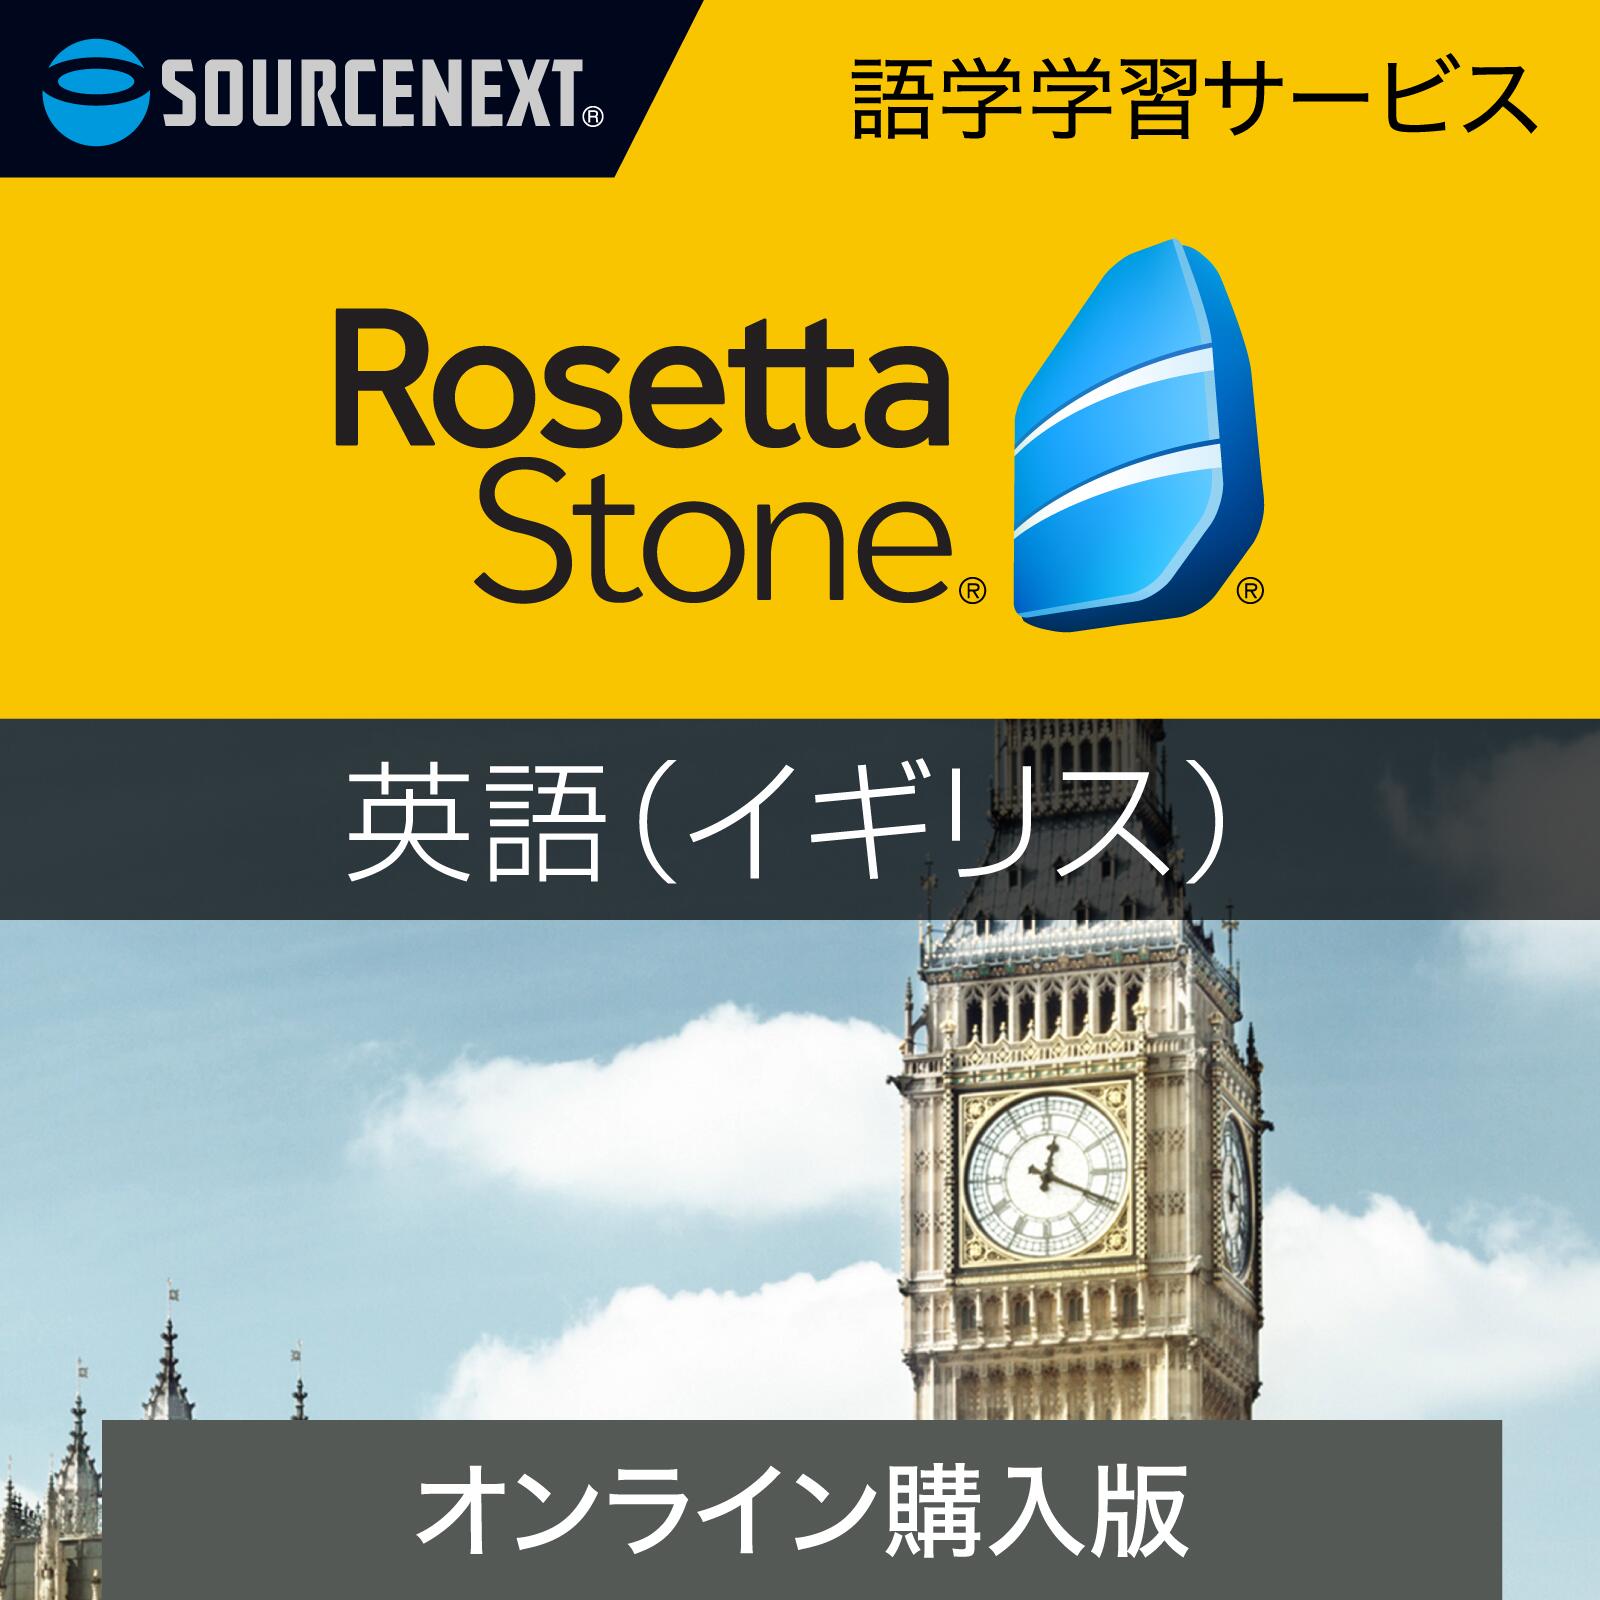 ソースネクスト|ロゼッタストーン 英語(イギリス)【ダウンロード版】DL_SNR|語学学習ソフト|Win/Mac/Android/iOS対応| オンラインコード版